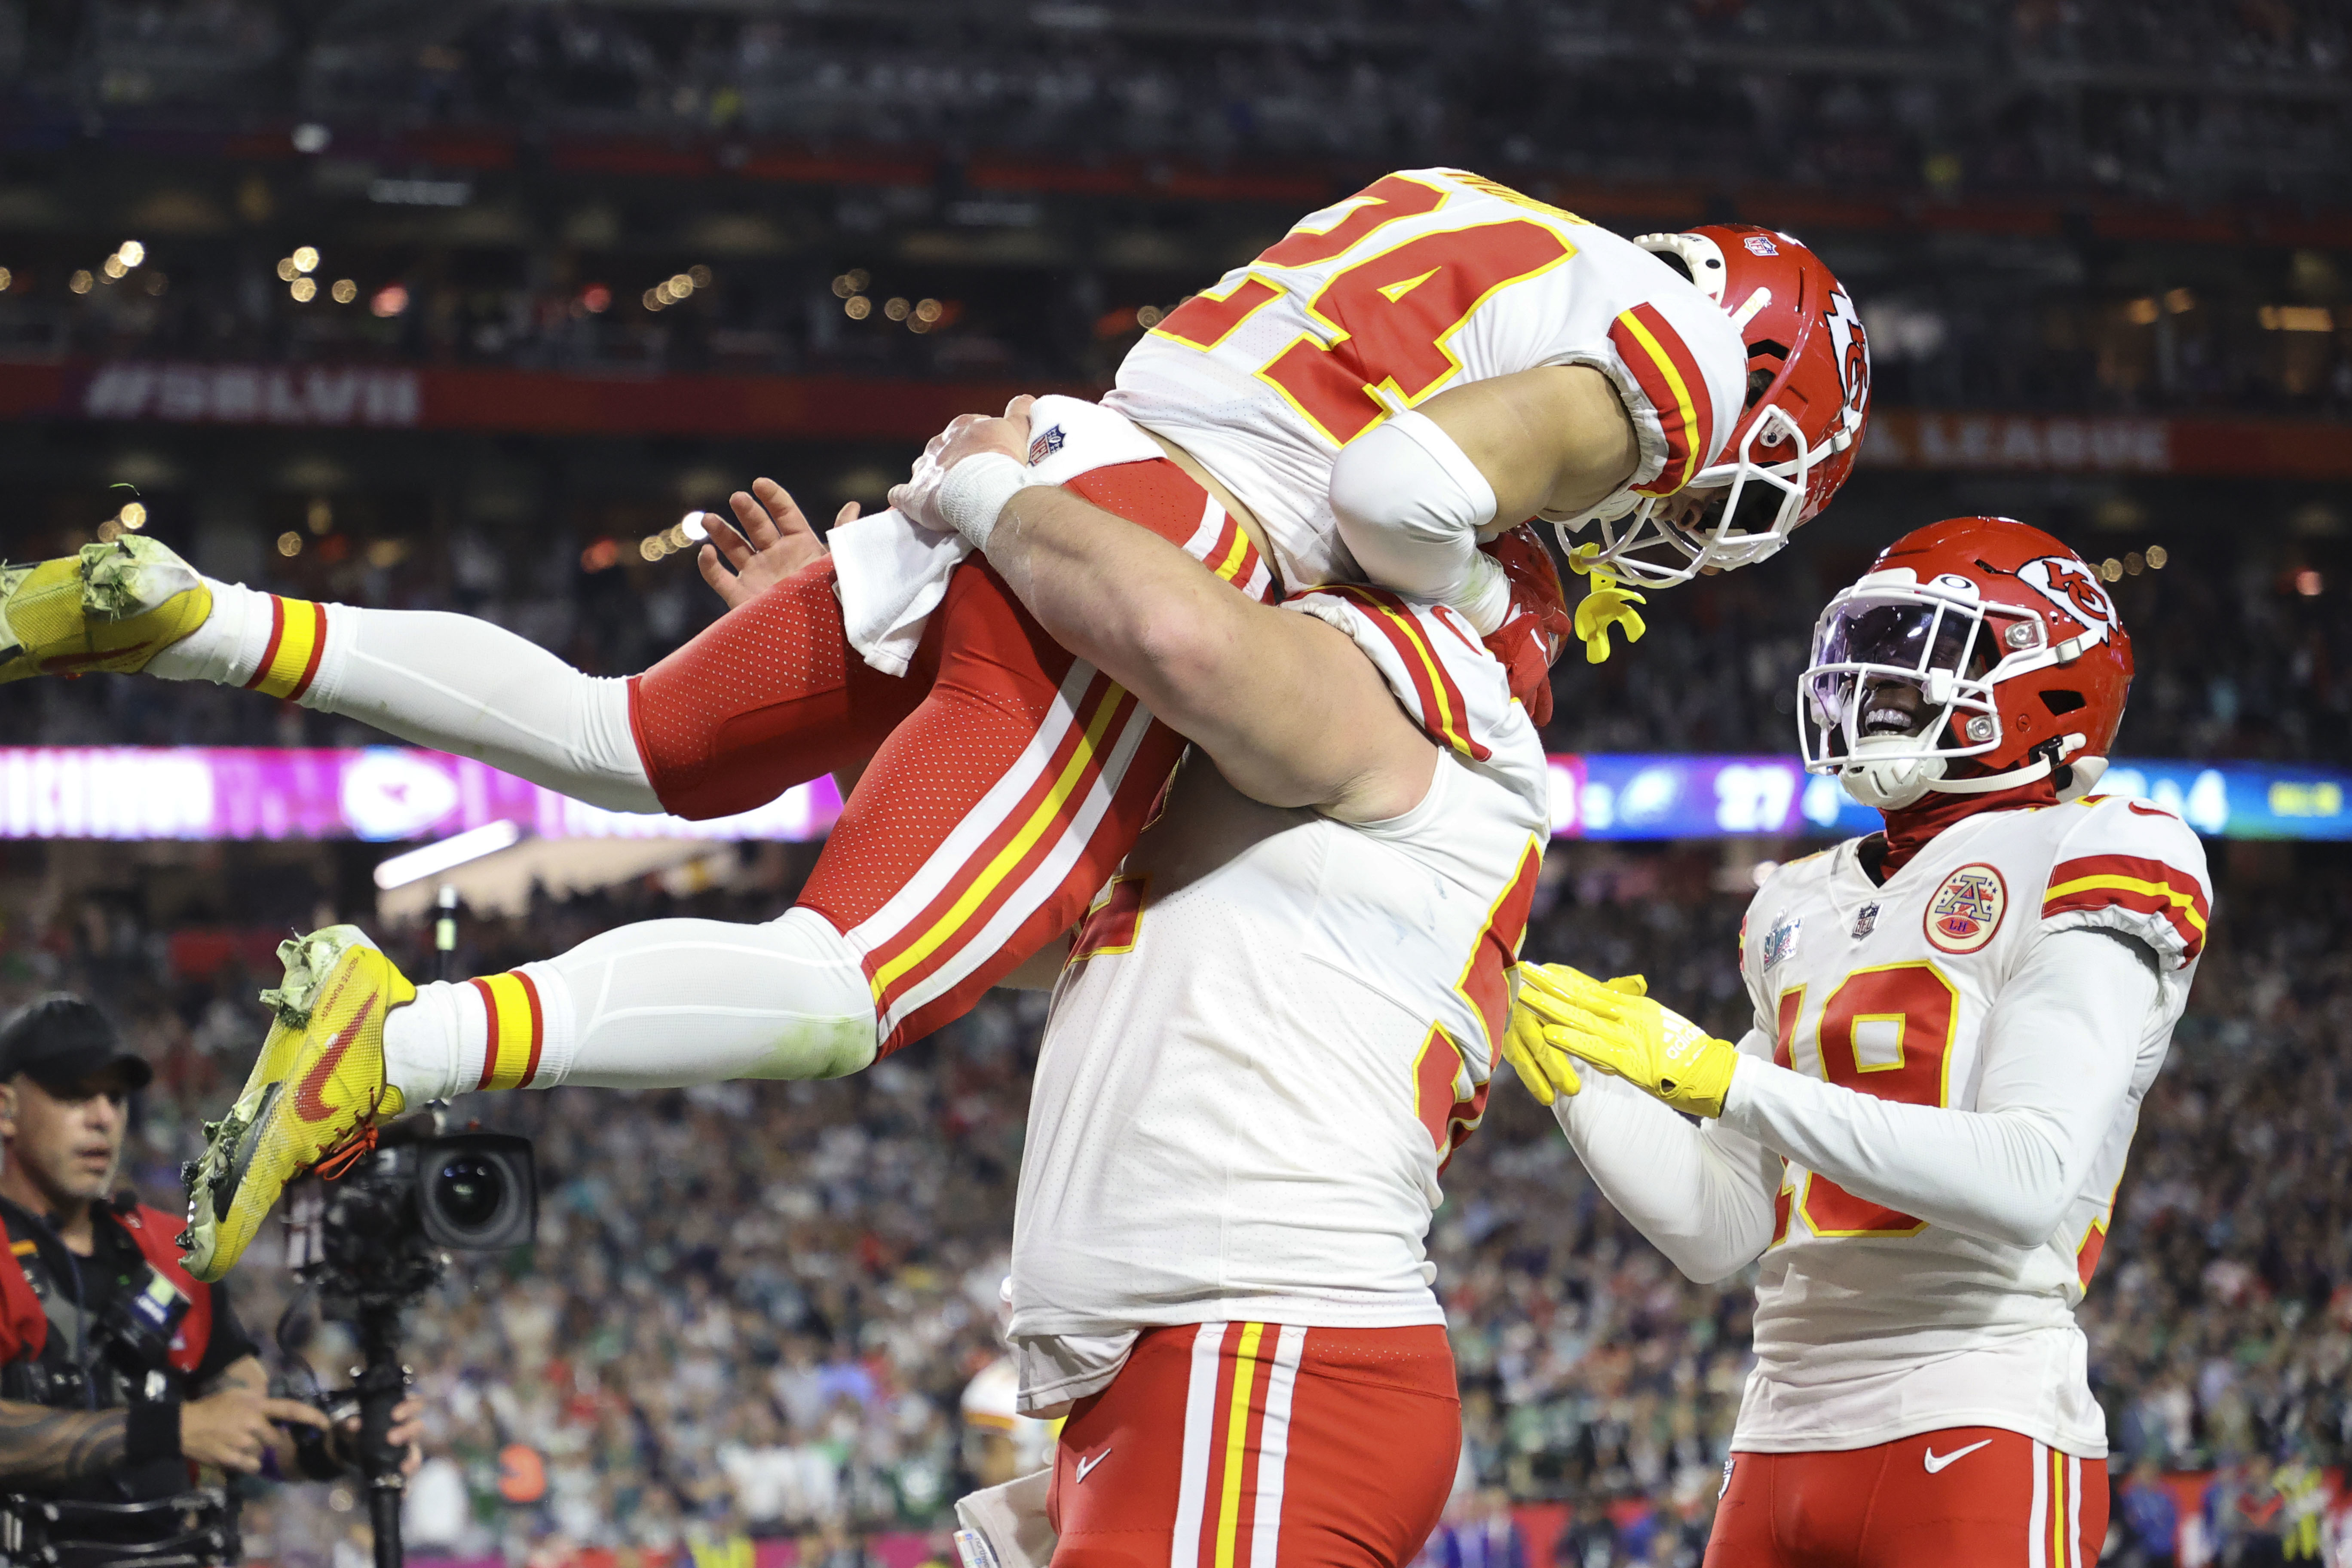 Jason Kelce faces major retirement decision after Super Bowl 57 vs. Chiefs